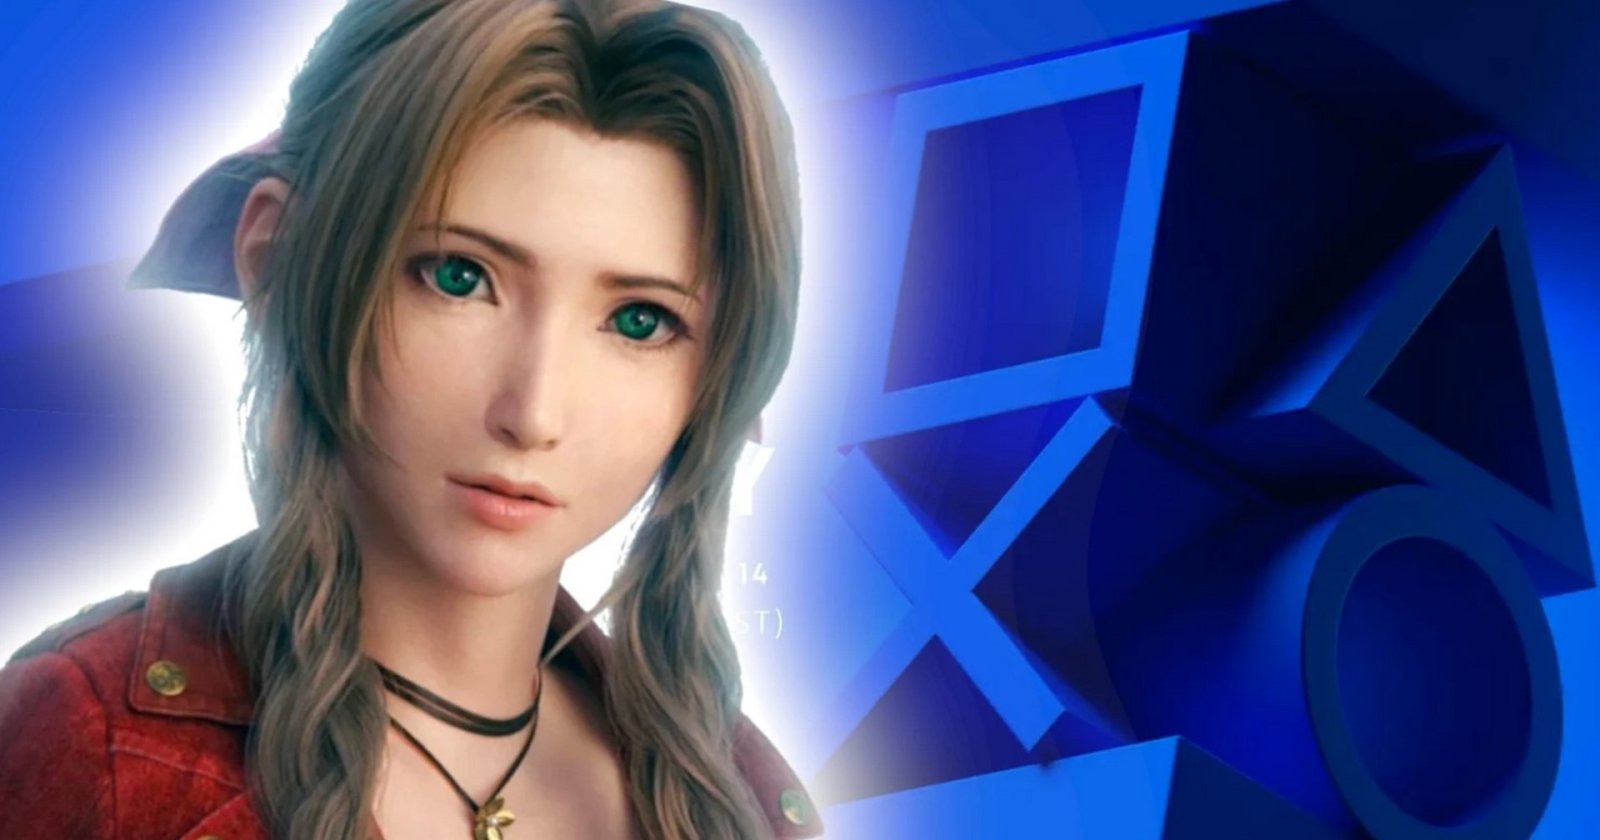 สรุปเกมเปิดตัวในงาน State of Play ที่เปิดวันวางขาย Final Fantasy 7 Rebirth